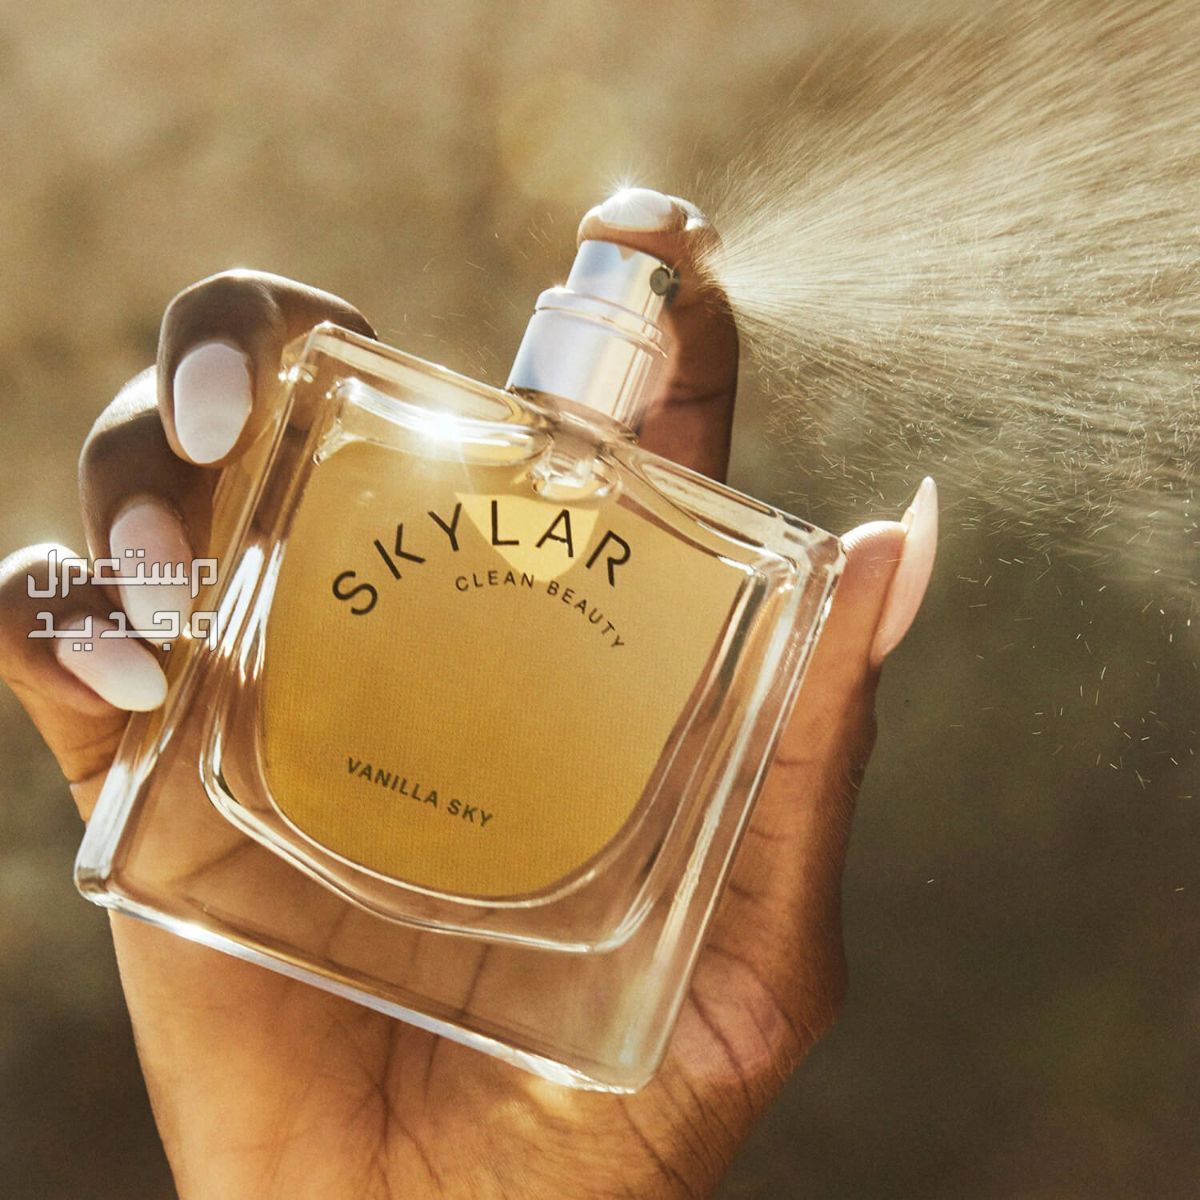 أفضل عطر نسائي برائحة الفانيليا لعام 2023 في جيبوتي طريقة استخدام عطر نسائي برائحة الفانيليا من Skylar Vanilla Sky Eau de Perfume